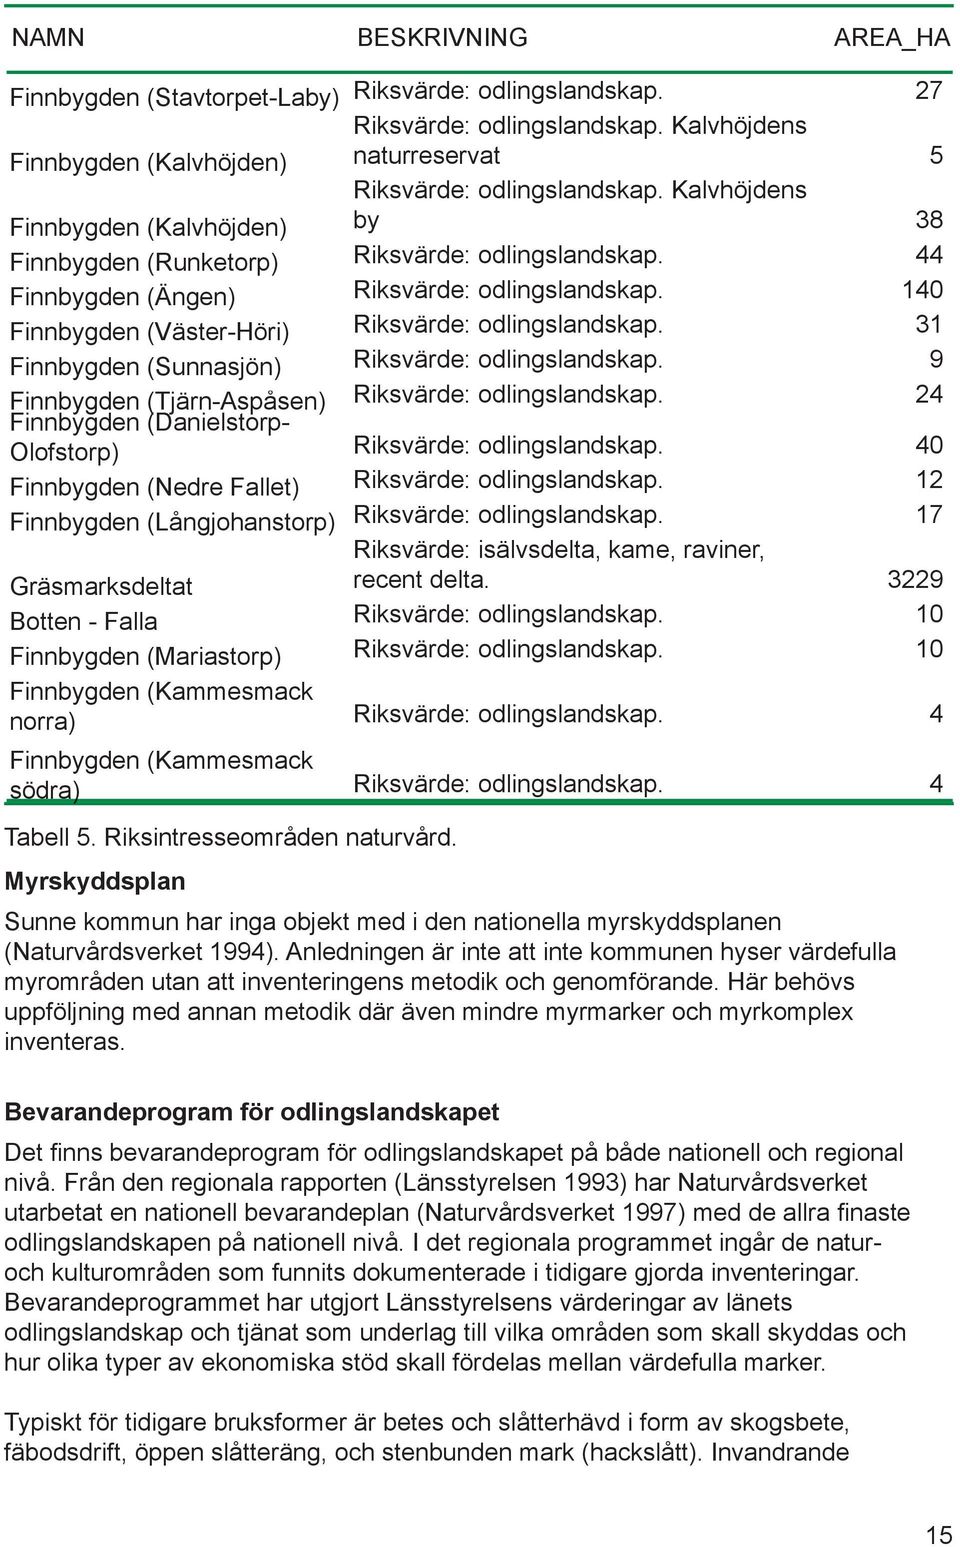 140 Finnbygden (Väster-Höri) Riksvärde: odlingslandskap. 31 Finnbygden (Sunnasjön) Riksvärde: odlingslandskap. 9 Finnbygden (Tjärn-Aspåsen) Riksvärde: odlingslandskap.